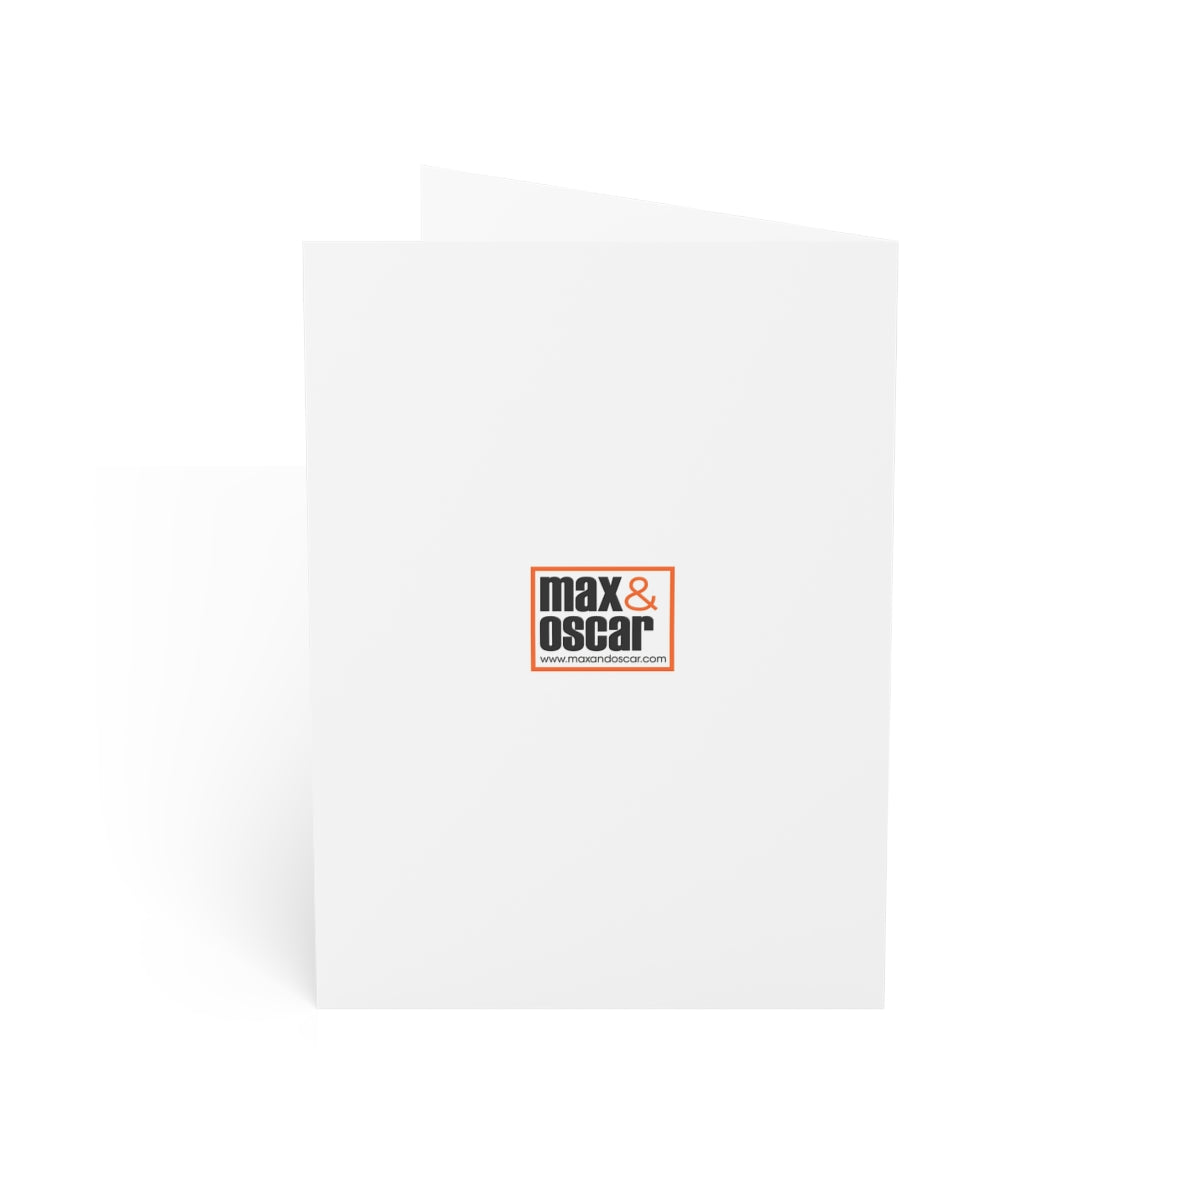 Bassin d'Arcachon Folded Matte Notecards + Envelopes (10pcs)